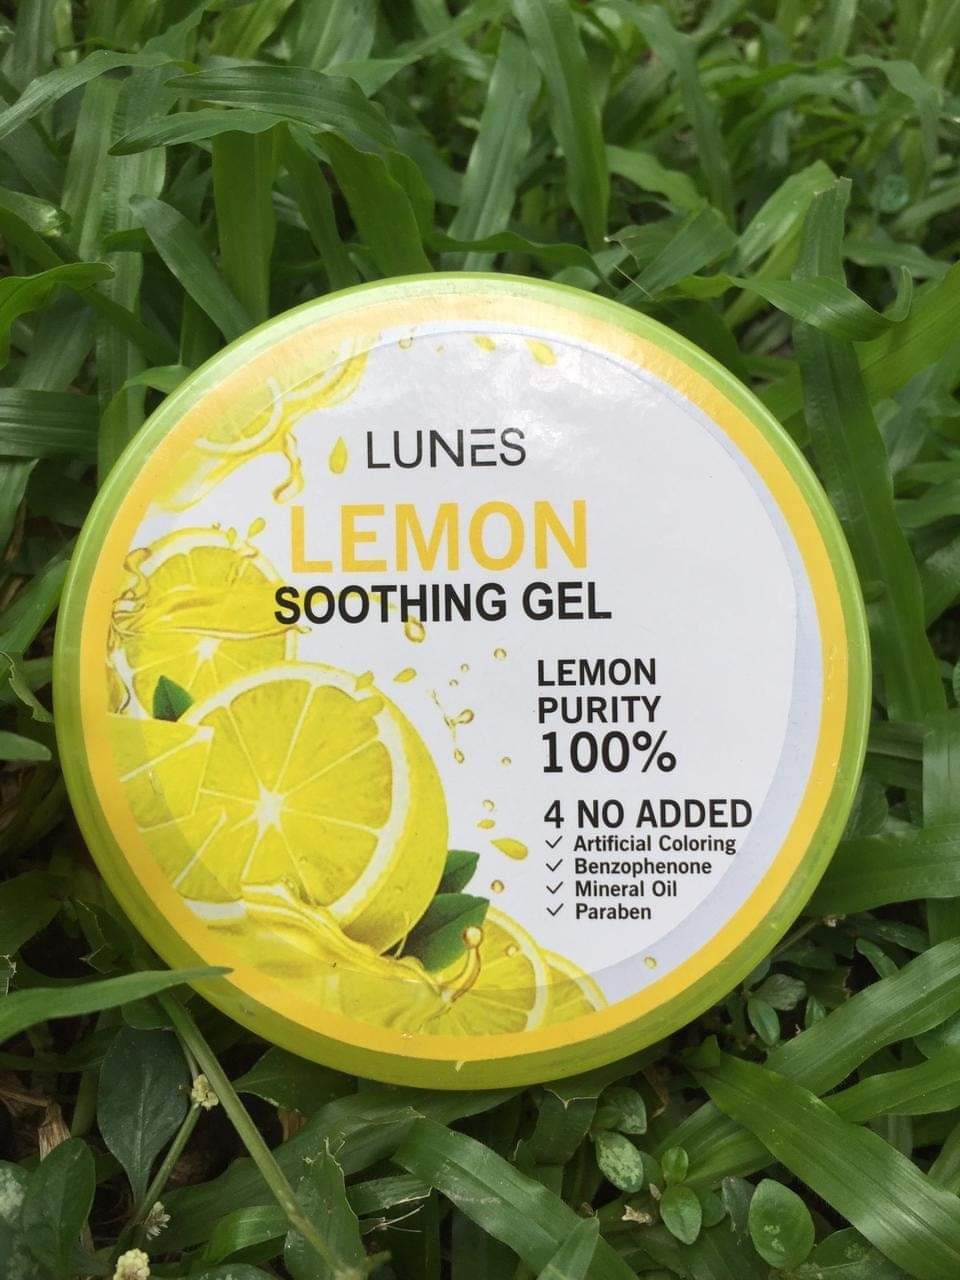 Lemon Soothing Gel ( product of Korea)